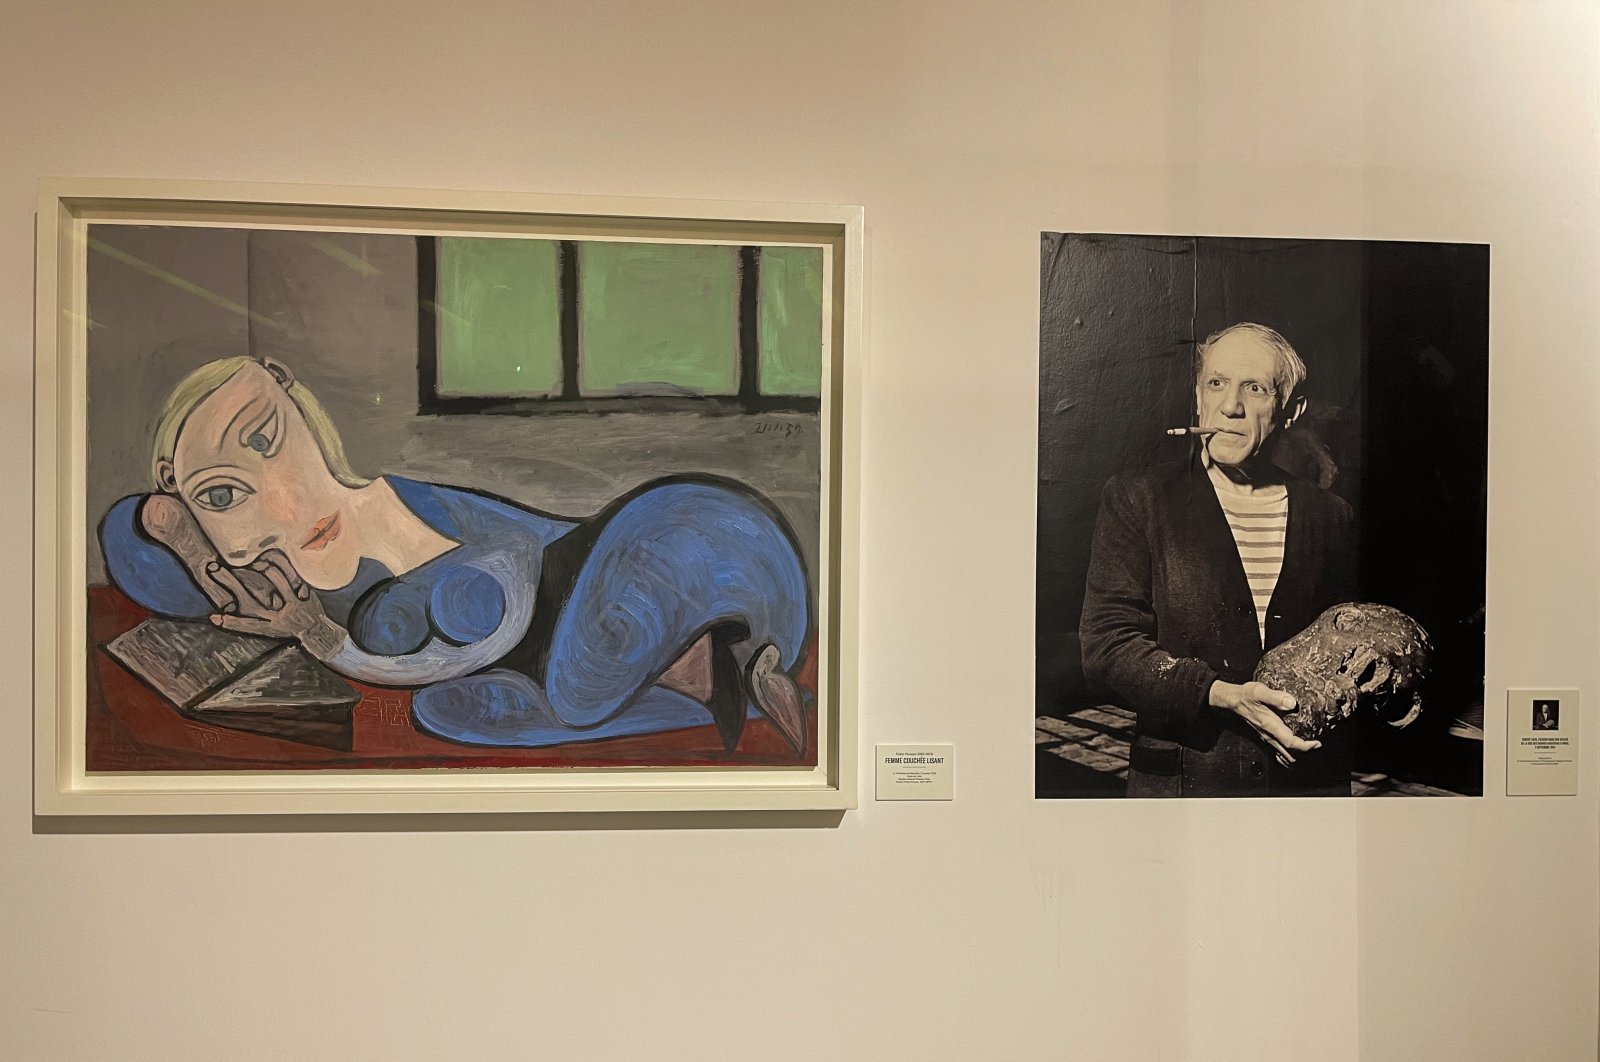 Pameran Picasso kembali ke Dakar Senegal setelah 50 tahun